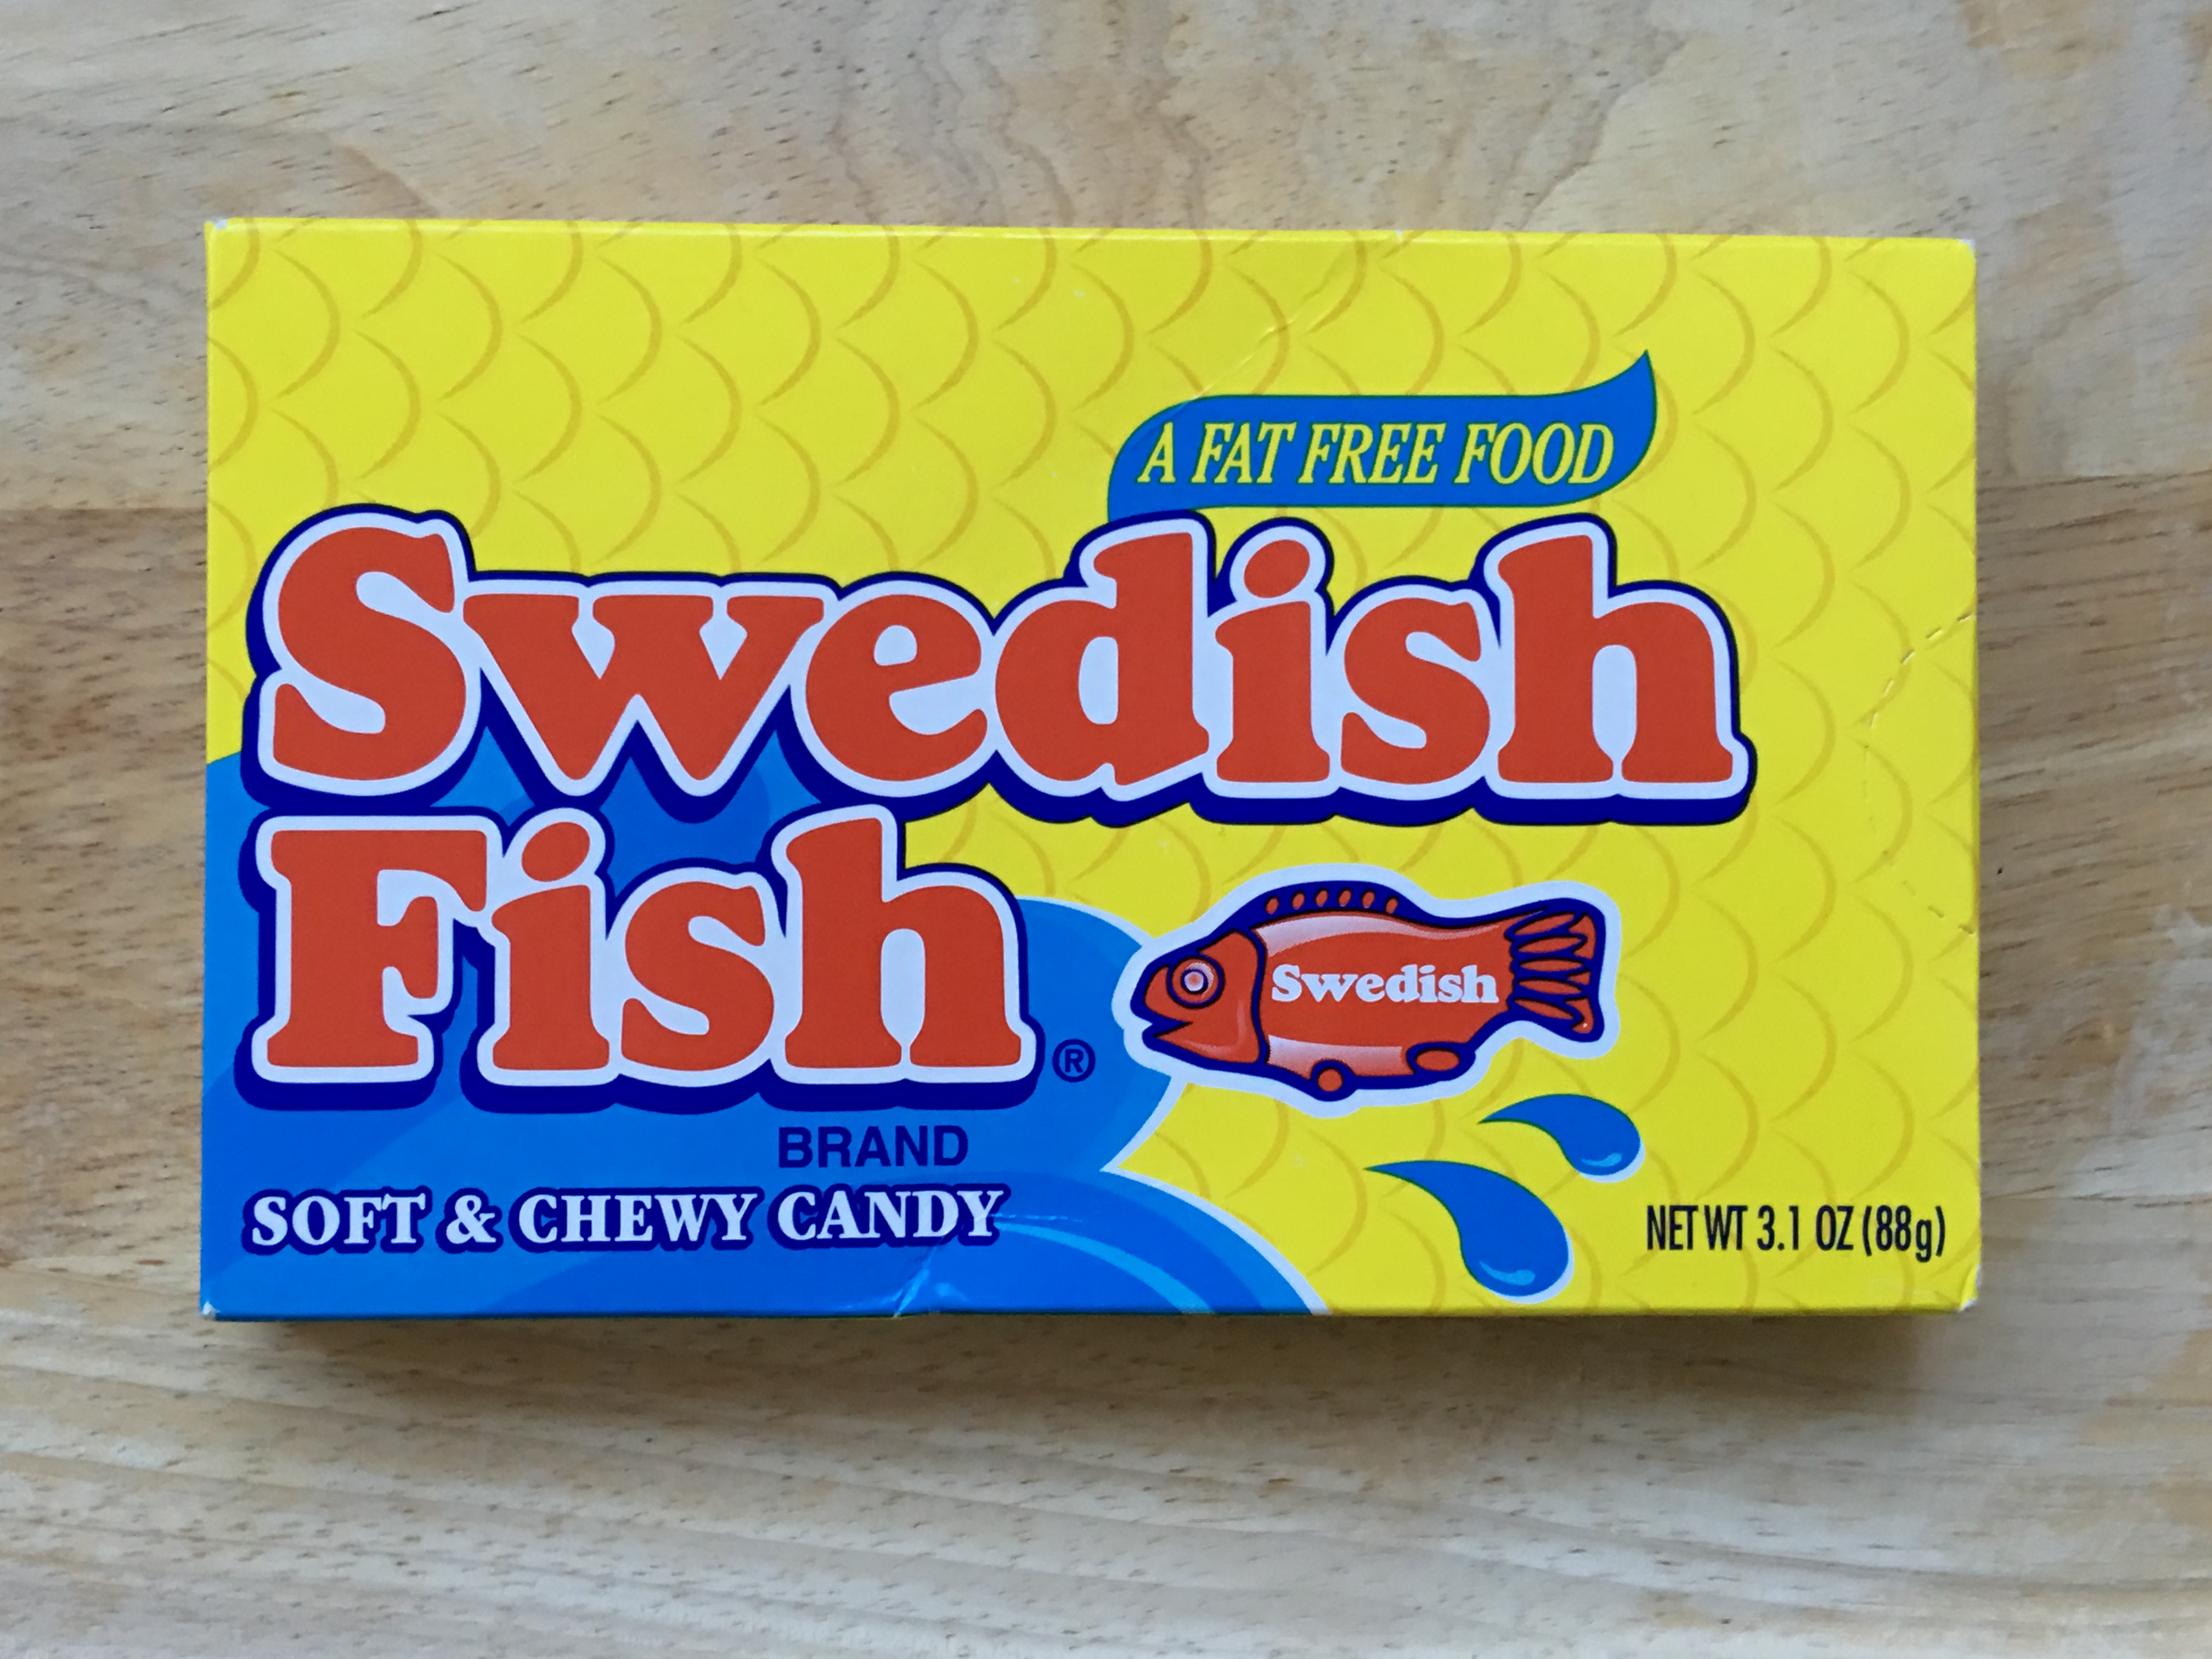 「Swedish Fish」